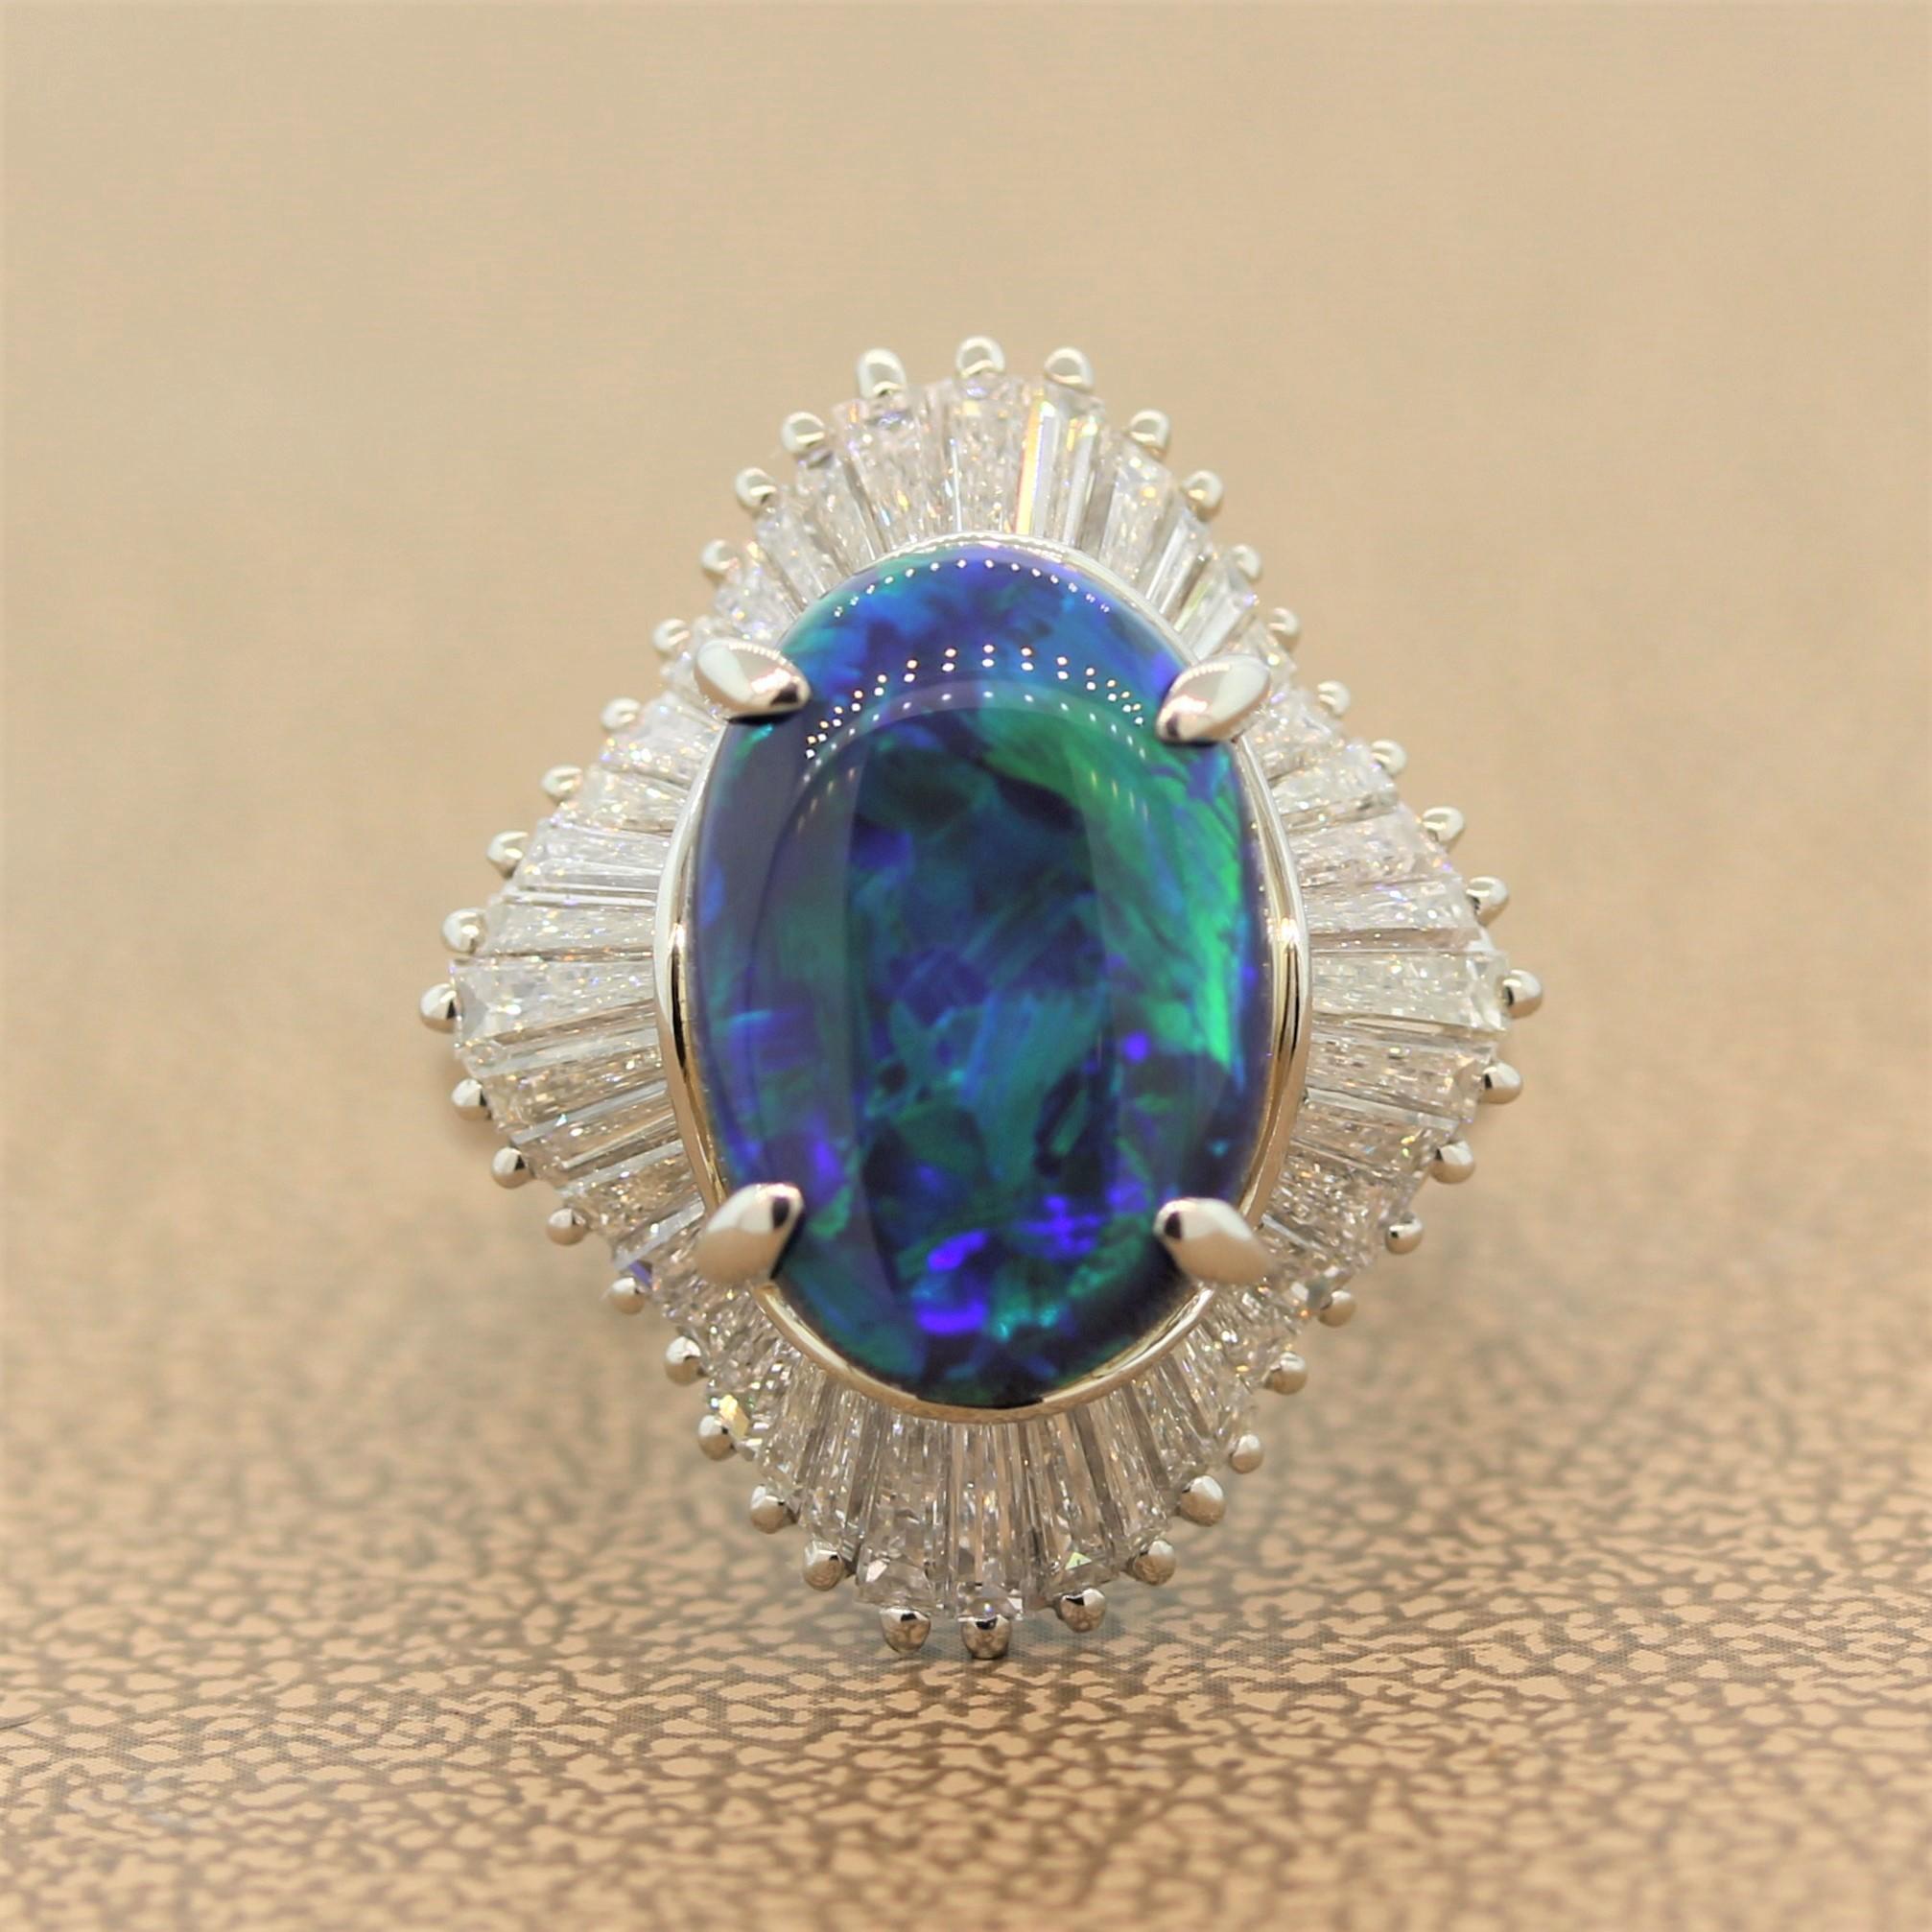 Ein perfekter Cocktailring für Tag und Nacht mit einem schwarzen Opal von 4,83 Karat. Der australische Opal zeigt helle und starke Blitze oder Blau und Grün über einer tiefschwarzen Körperfarbe, die das Farbenspiel des Opals hervorhebt. Dieser Ring